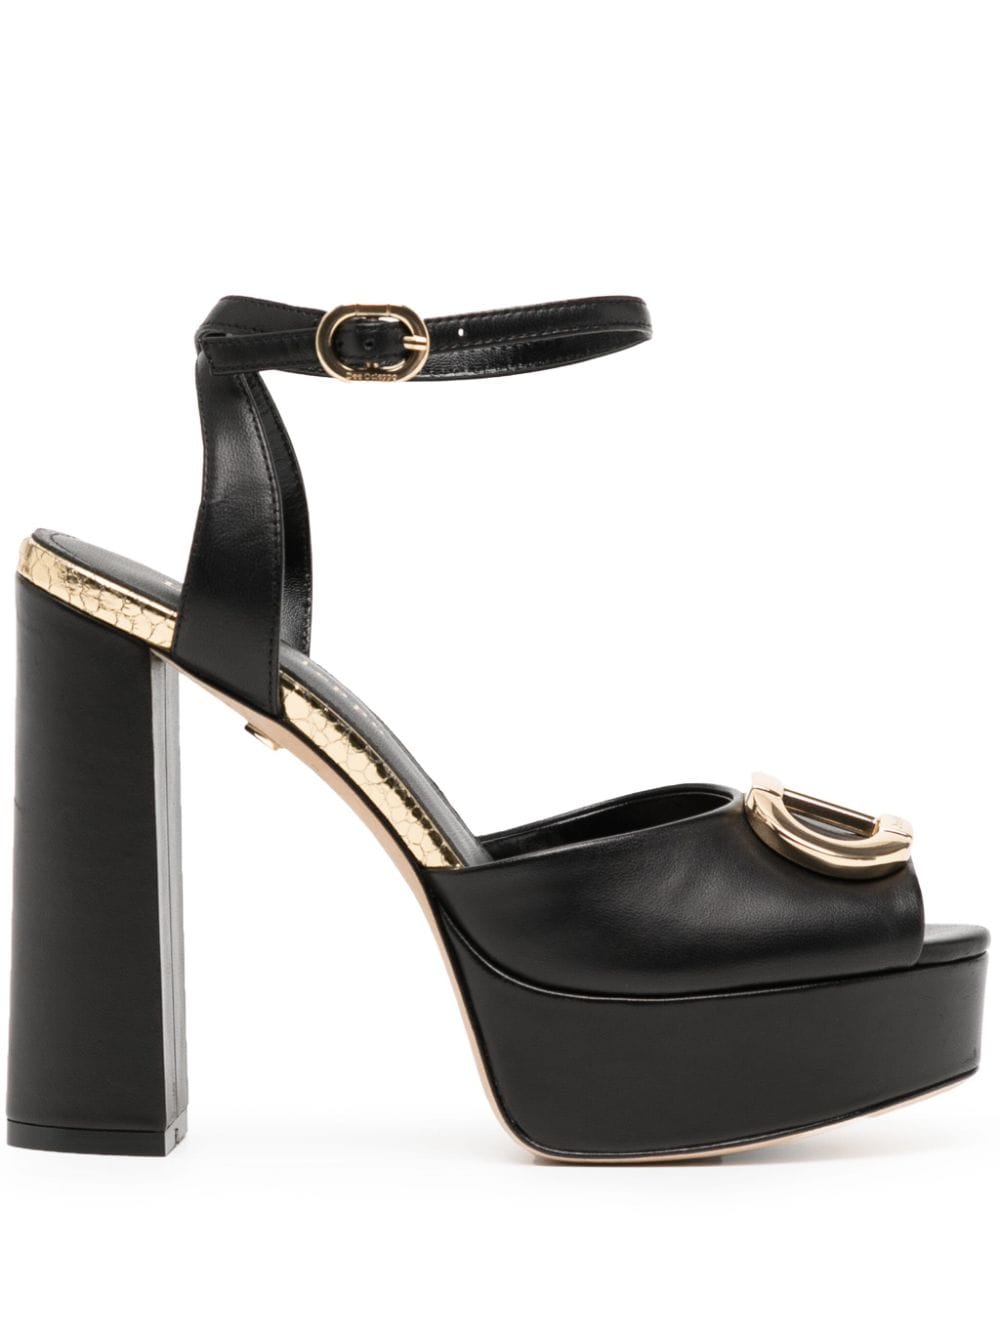 Dee Ocleppo Brigitte 85mm leather sandals - Black von Dee Ocleppo